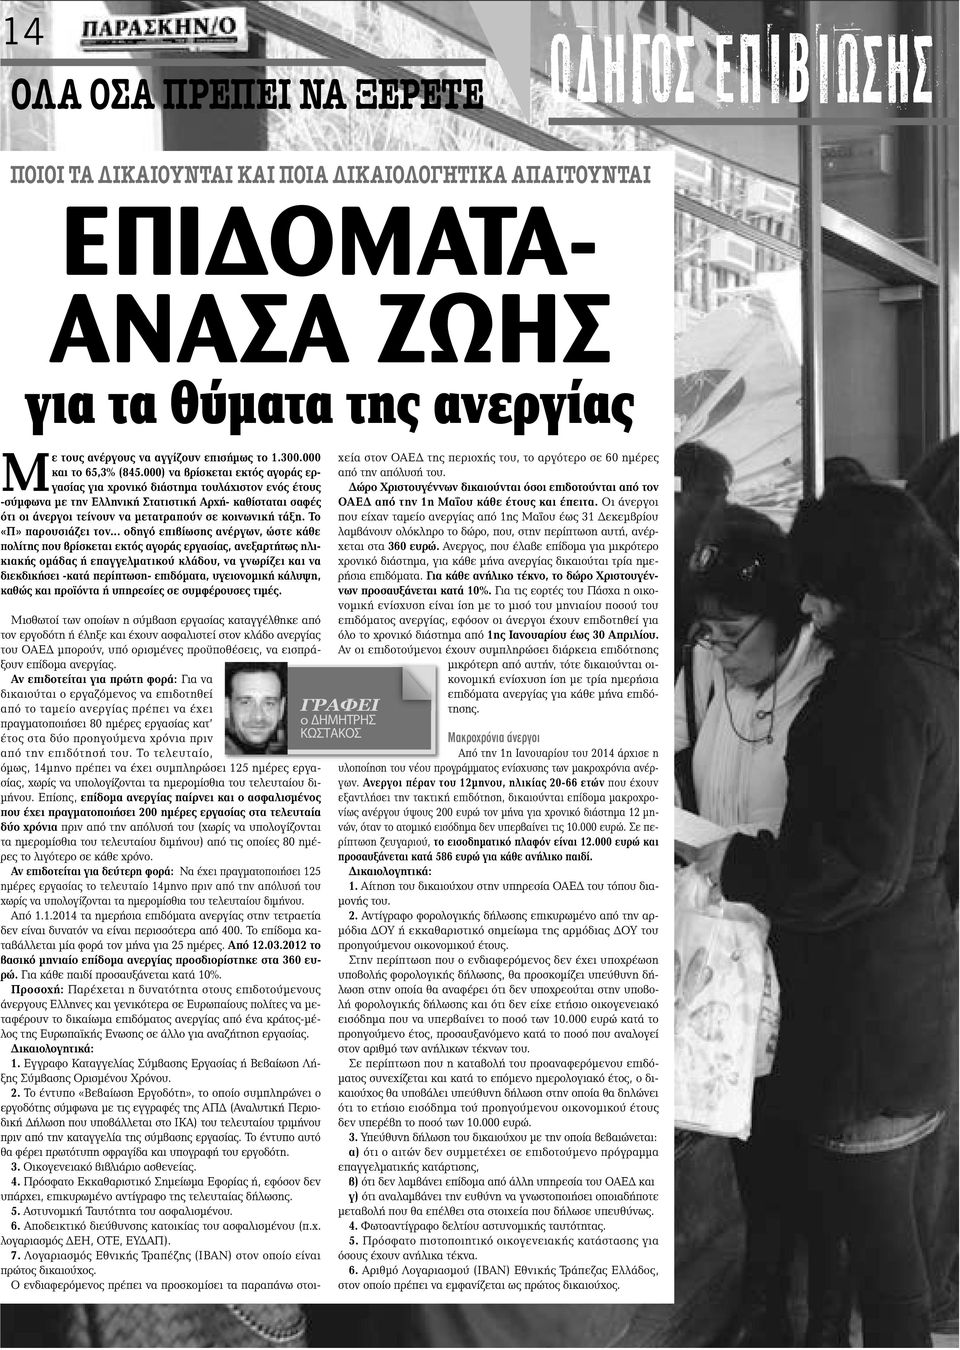 000) να βρίσκεται εκτός αγοράς εργασίας για χρονικό διάστημα τουλάχιστον ενός έτους -σύμφωνα με την Ελληνική Στατιστική Αρχή- καθίσταται σαφές ότι οι άνεργοι τείνουν να μετατραπούν σε κοινωνική τάξη.